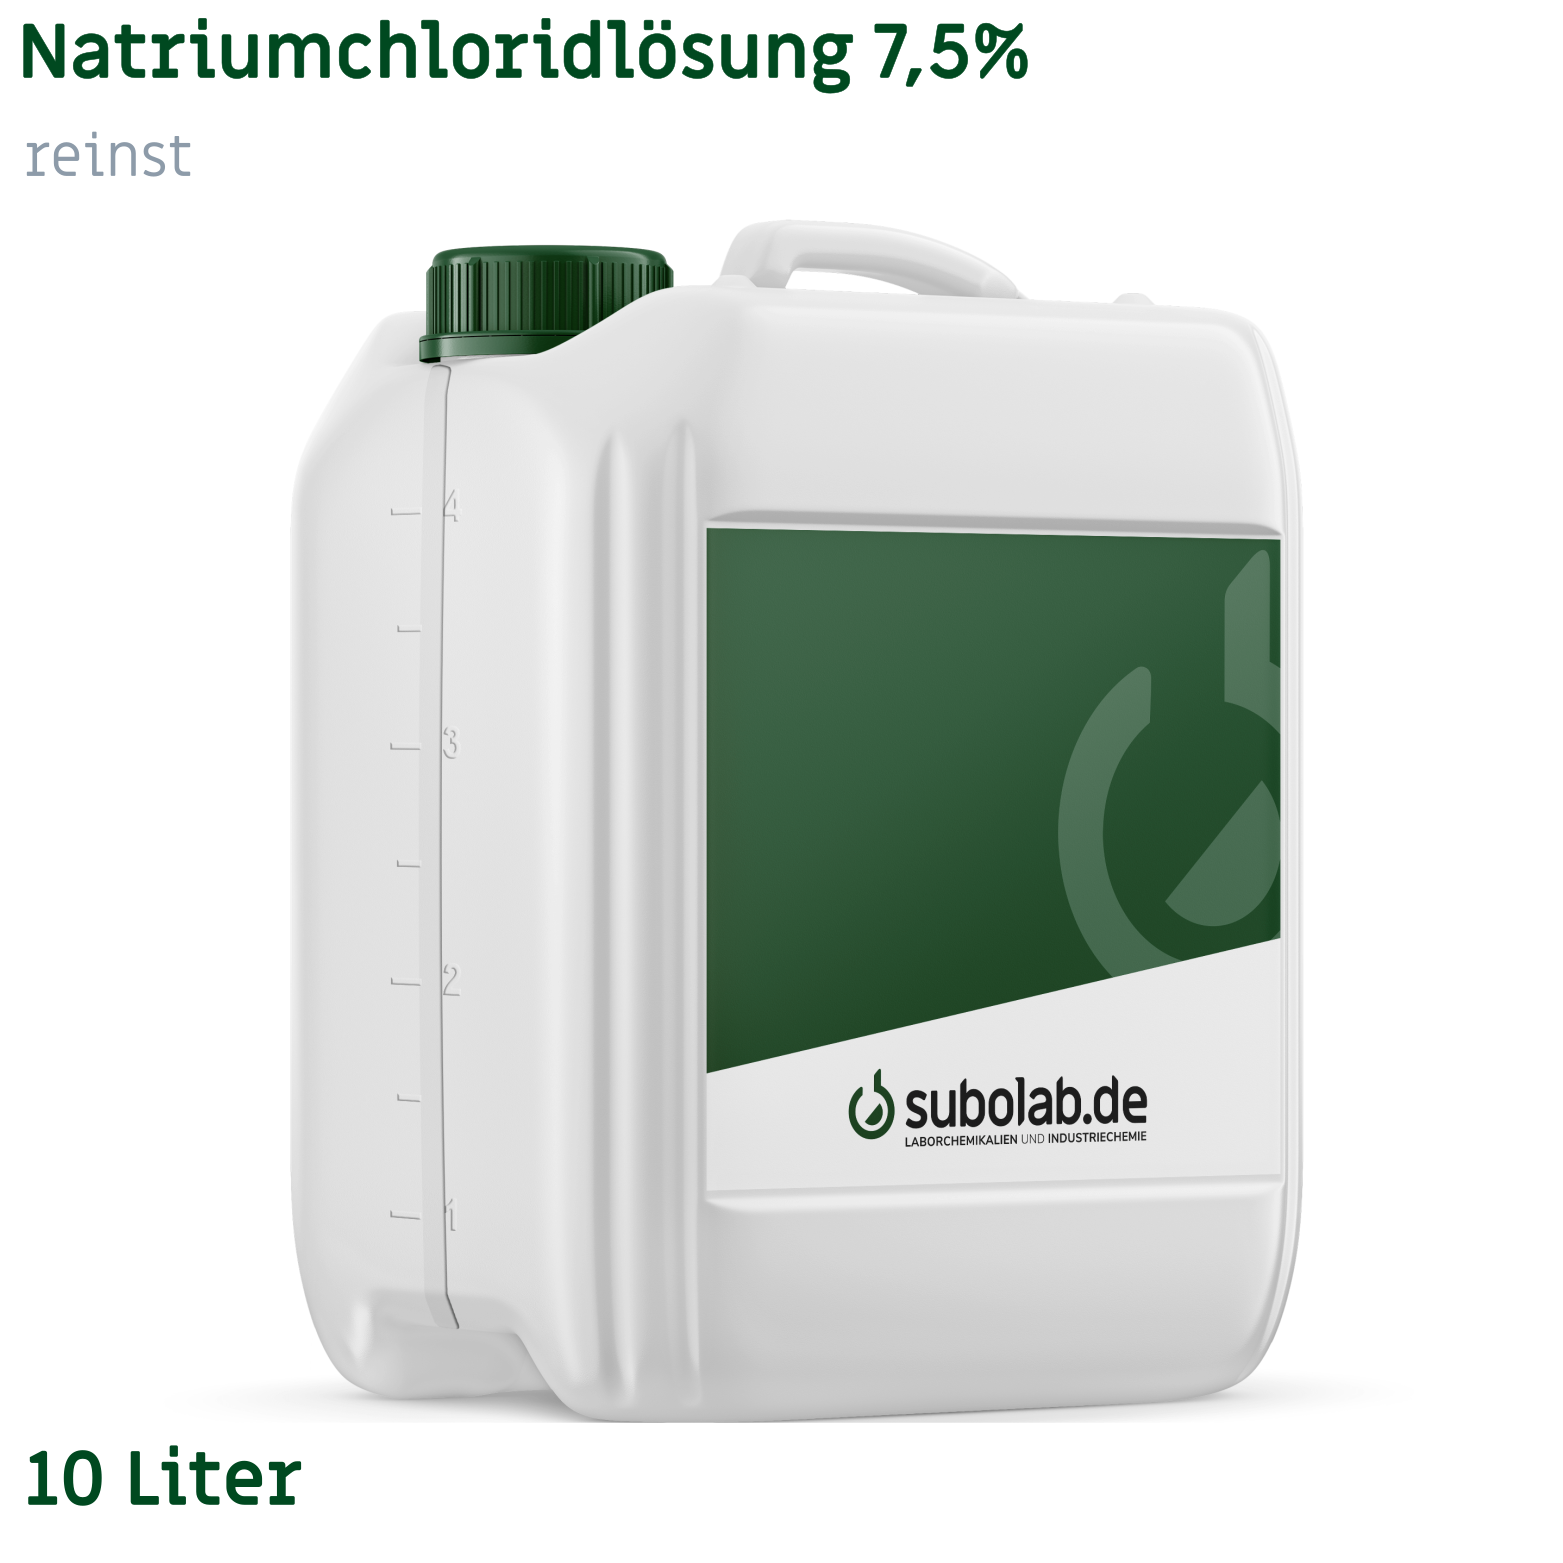 Bild von Natriumchloridlösung 7,5% reinst (10 Liter)